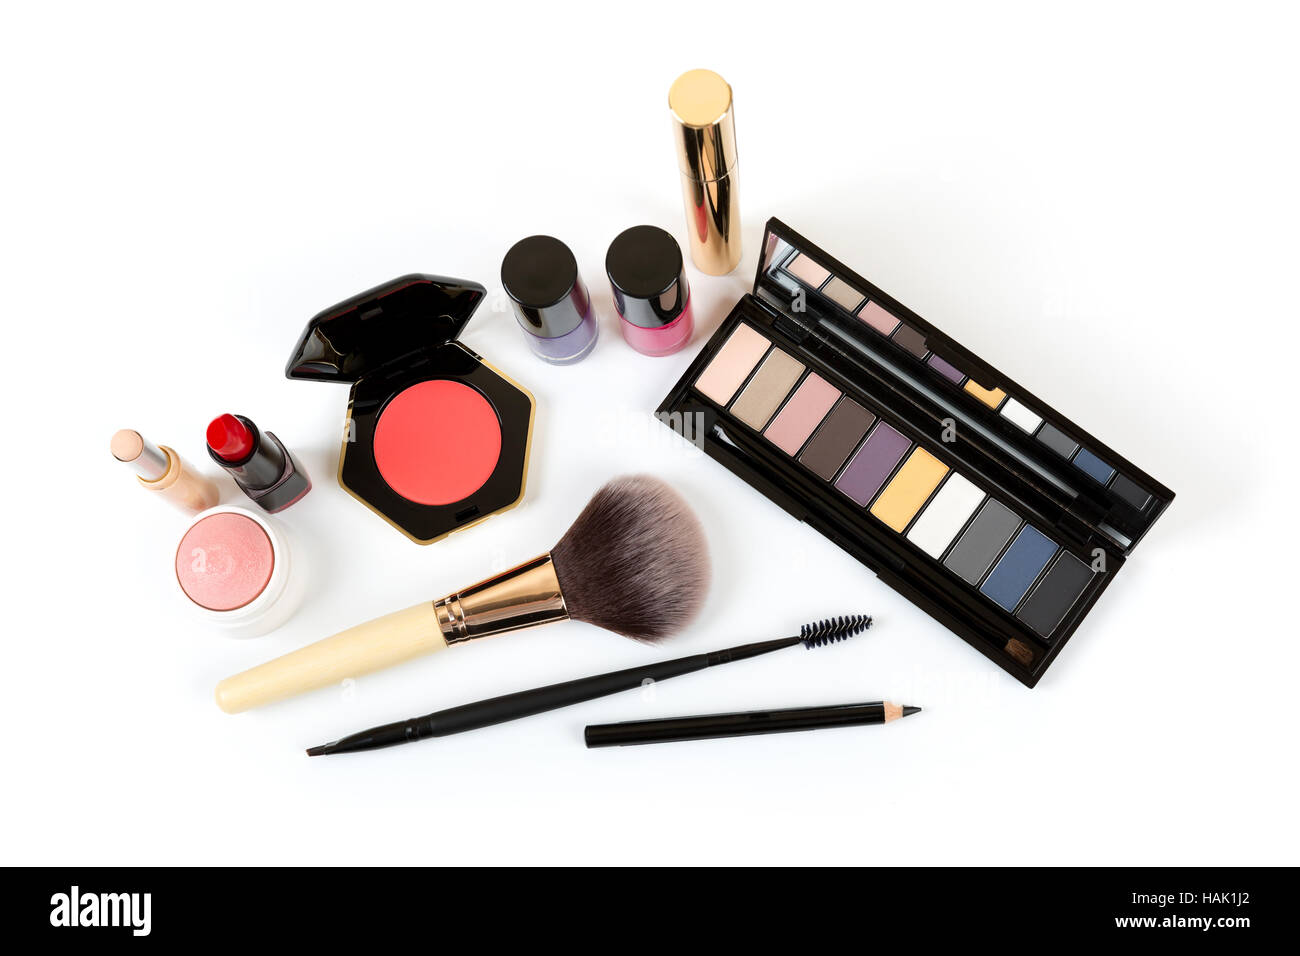 make up cosmetics isolated on white background Stock Photo